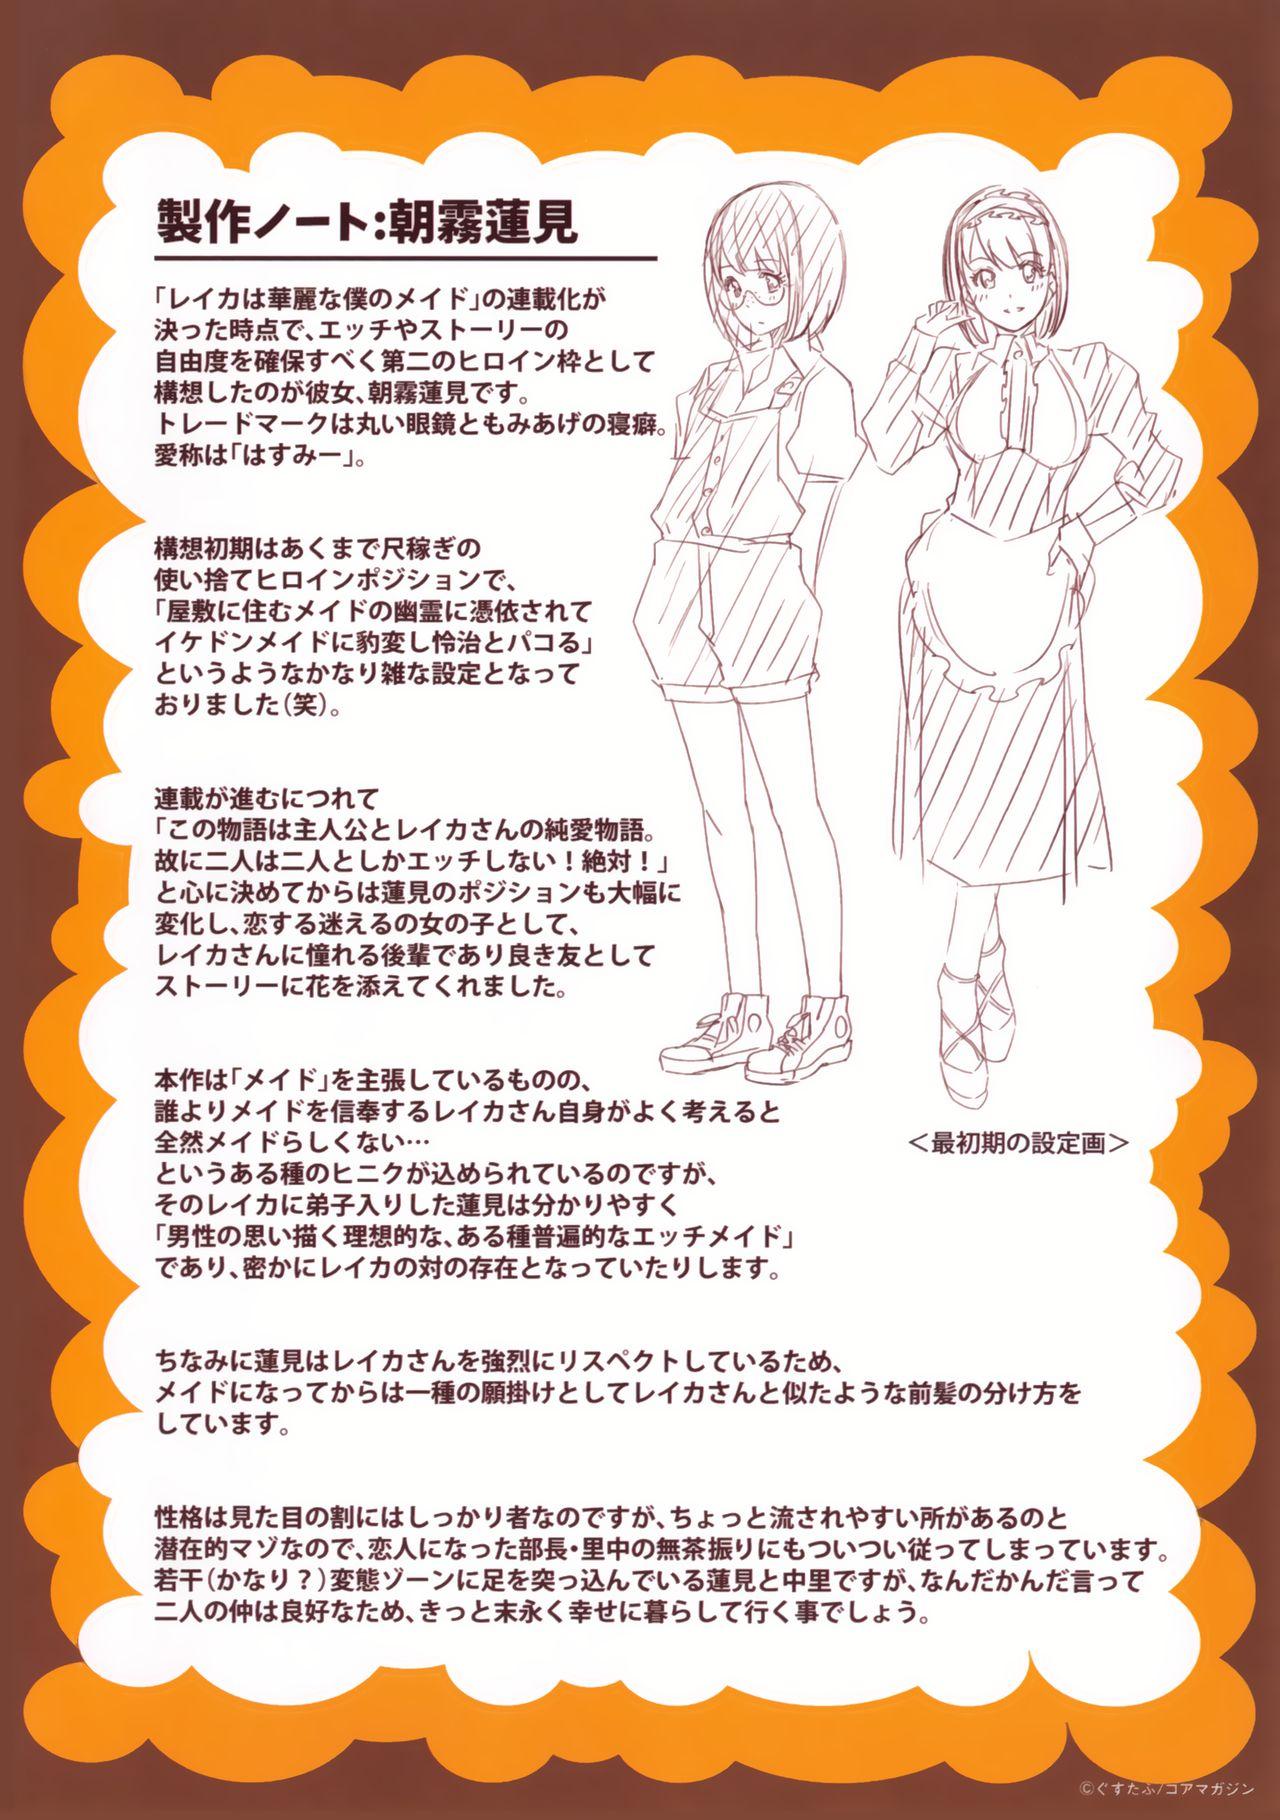 Reika wa Karei na Boku no Maid Toranoana Kounyuu Tokuten 8P Shousasshi | Reika, My Spendid Maid - 8 Page Special 8